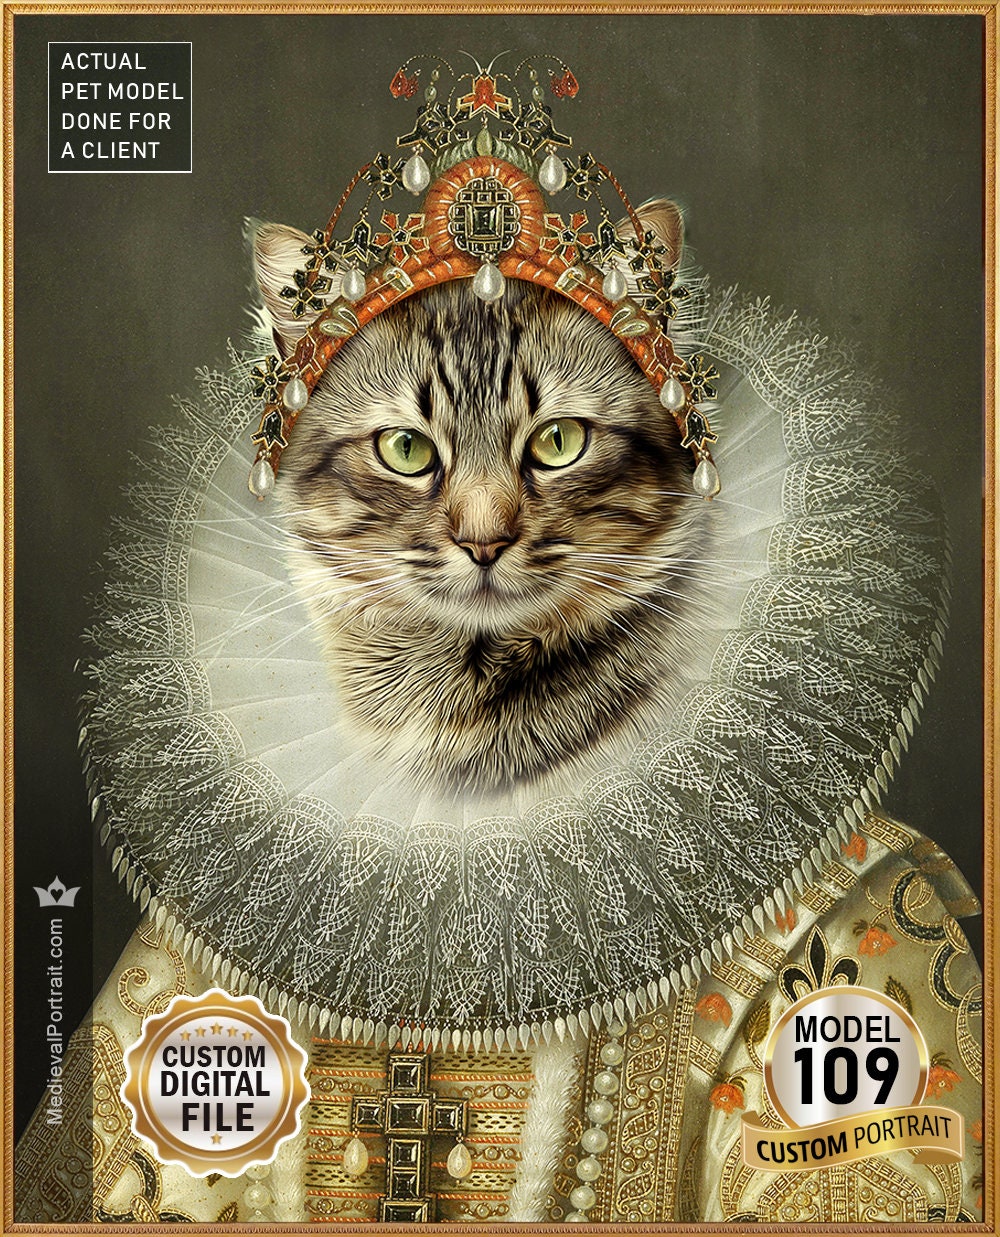 Aristocrat cat, Cat lover, Royal pet portrait, Renaissance pet